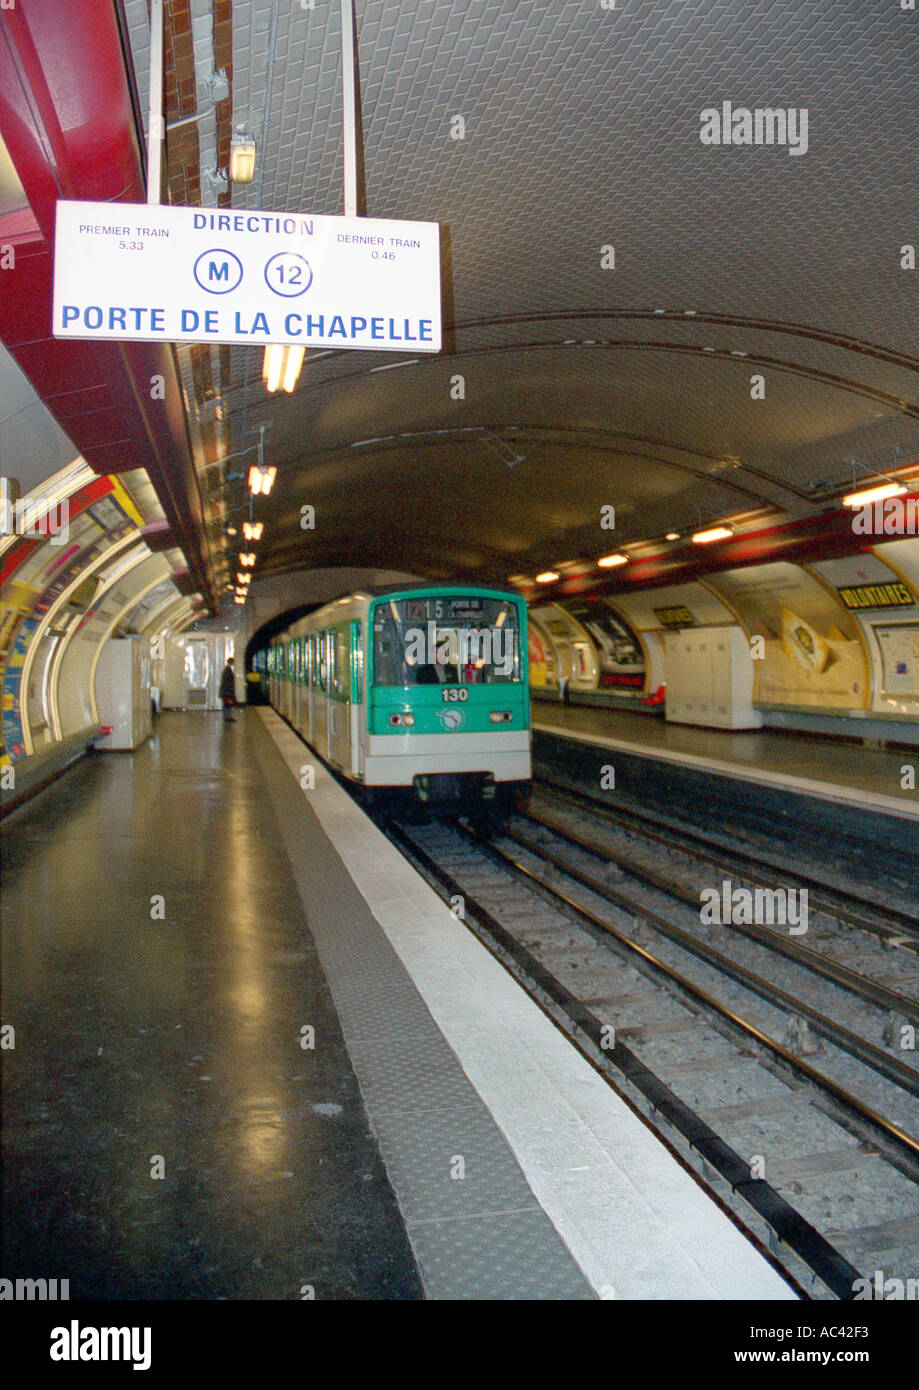 Le Metro Port de la Chapelle station Paris France Stock Photo - Alamy